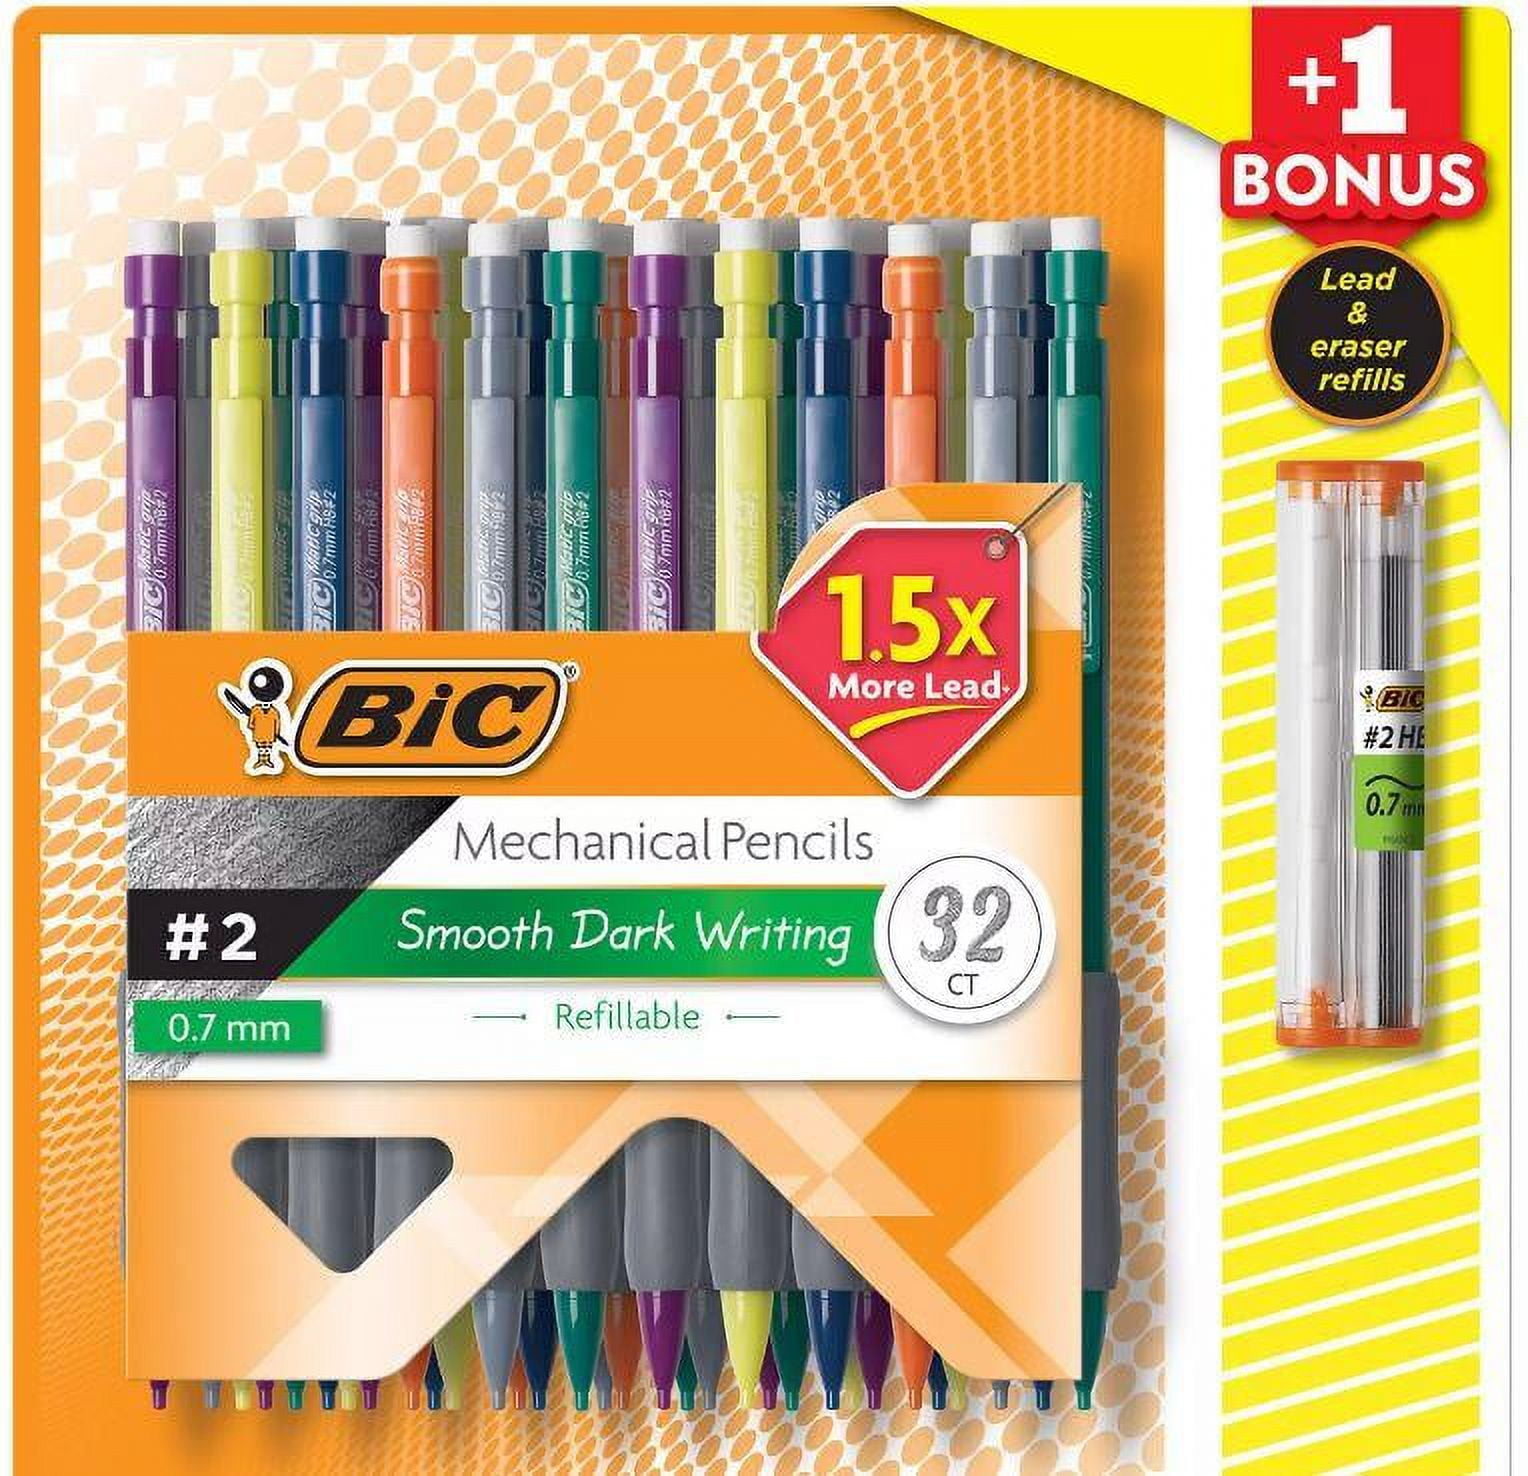 Bic Bonus Pack Xtra Sparkle 0.7mm Mechanical Pencil - 24 ct